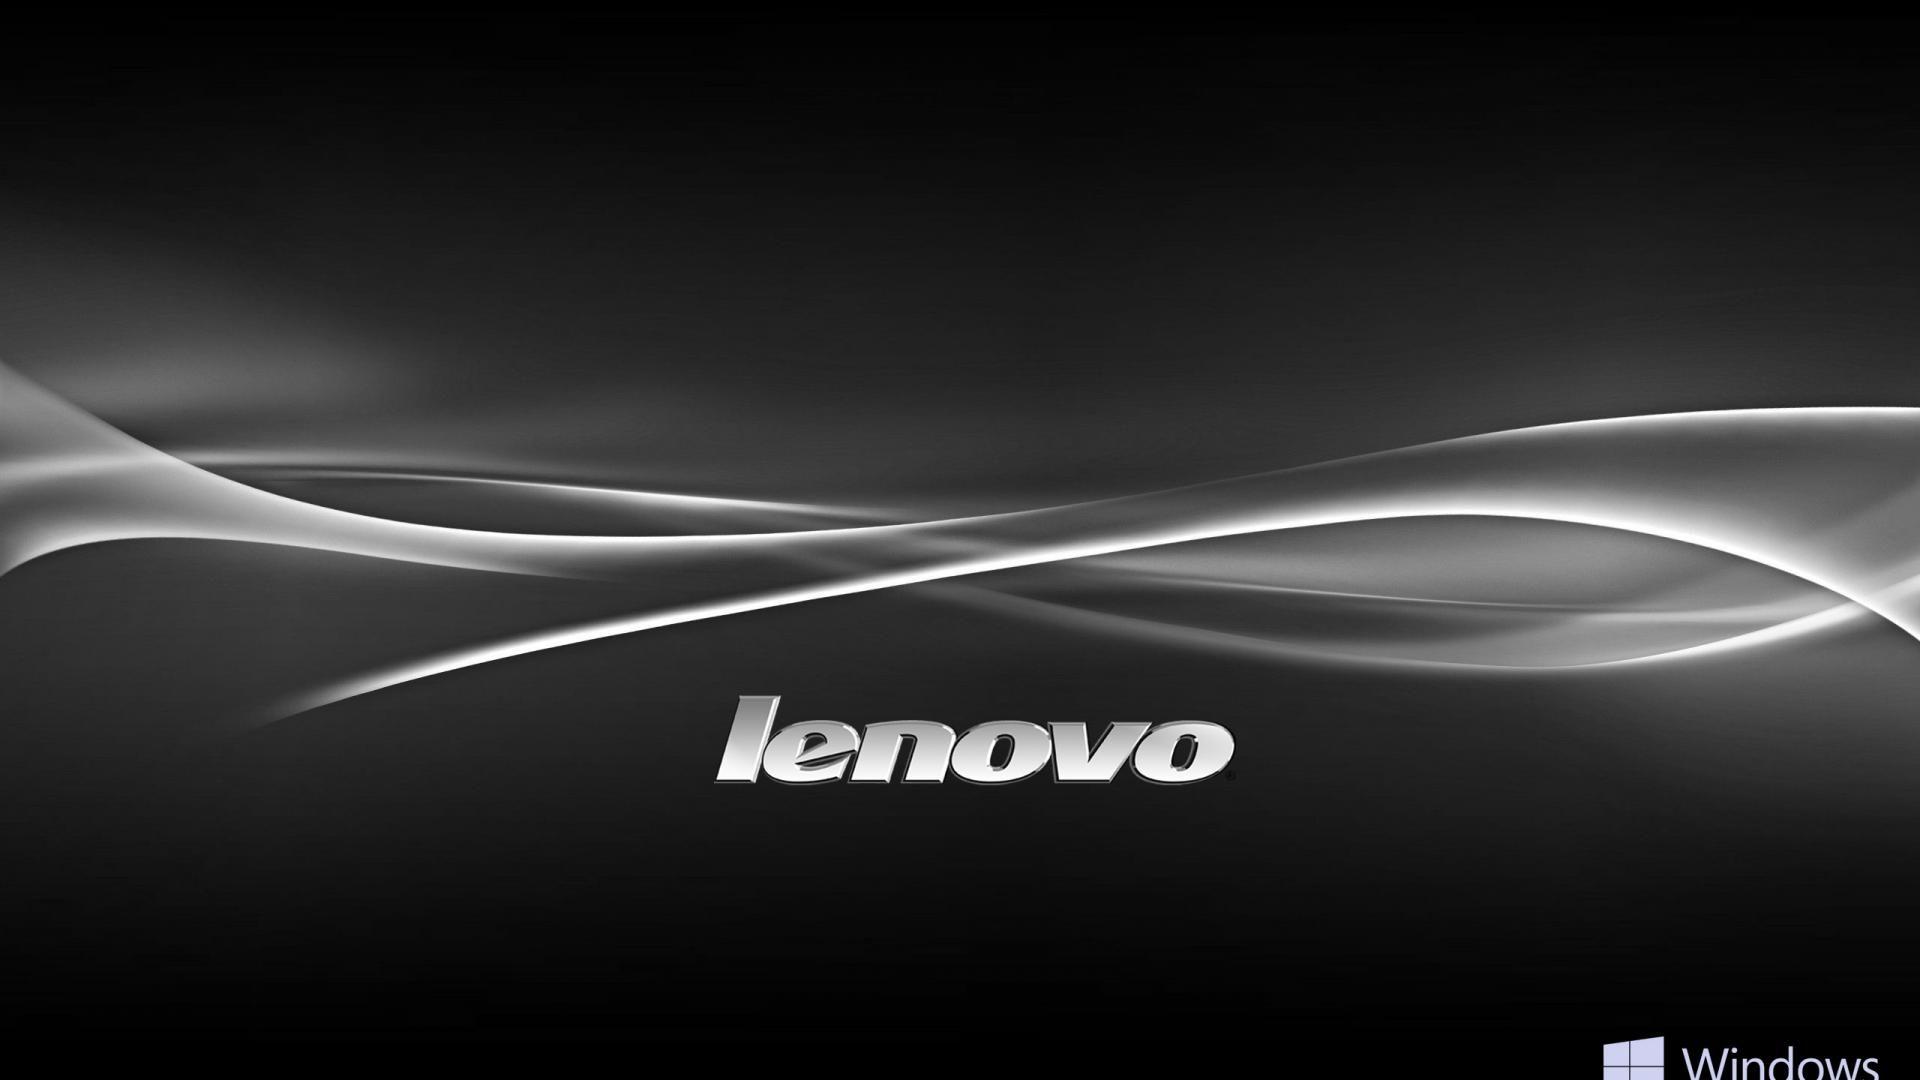 Windows 10 OEM Wallpapers for Lenovo